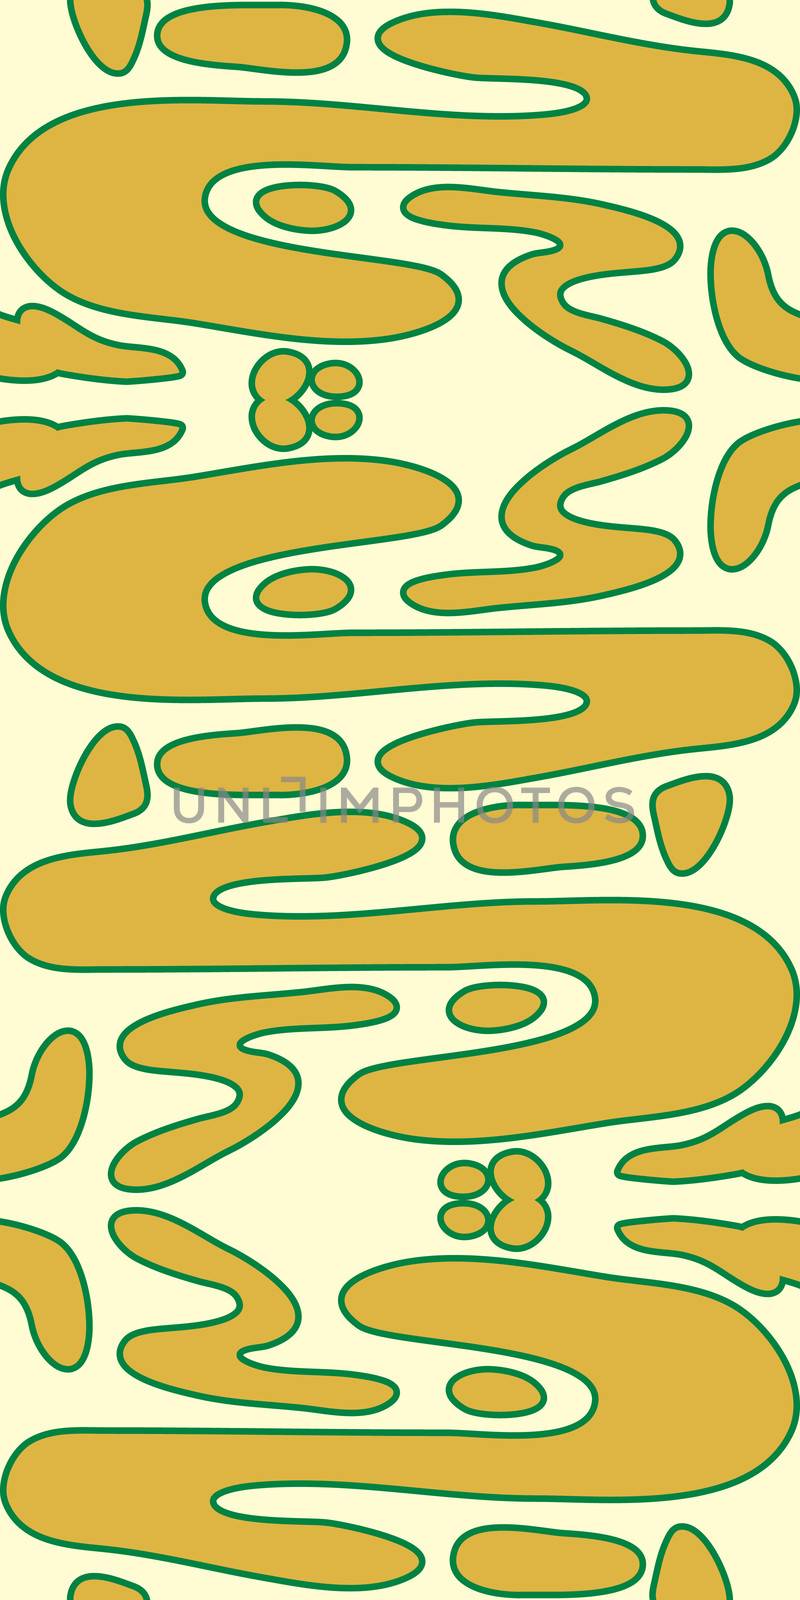 Seamless wallpaper pattern of yellow organic shapes